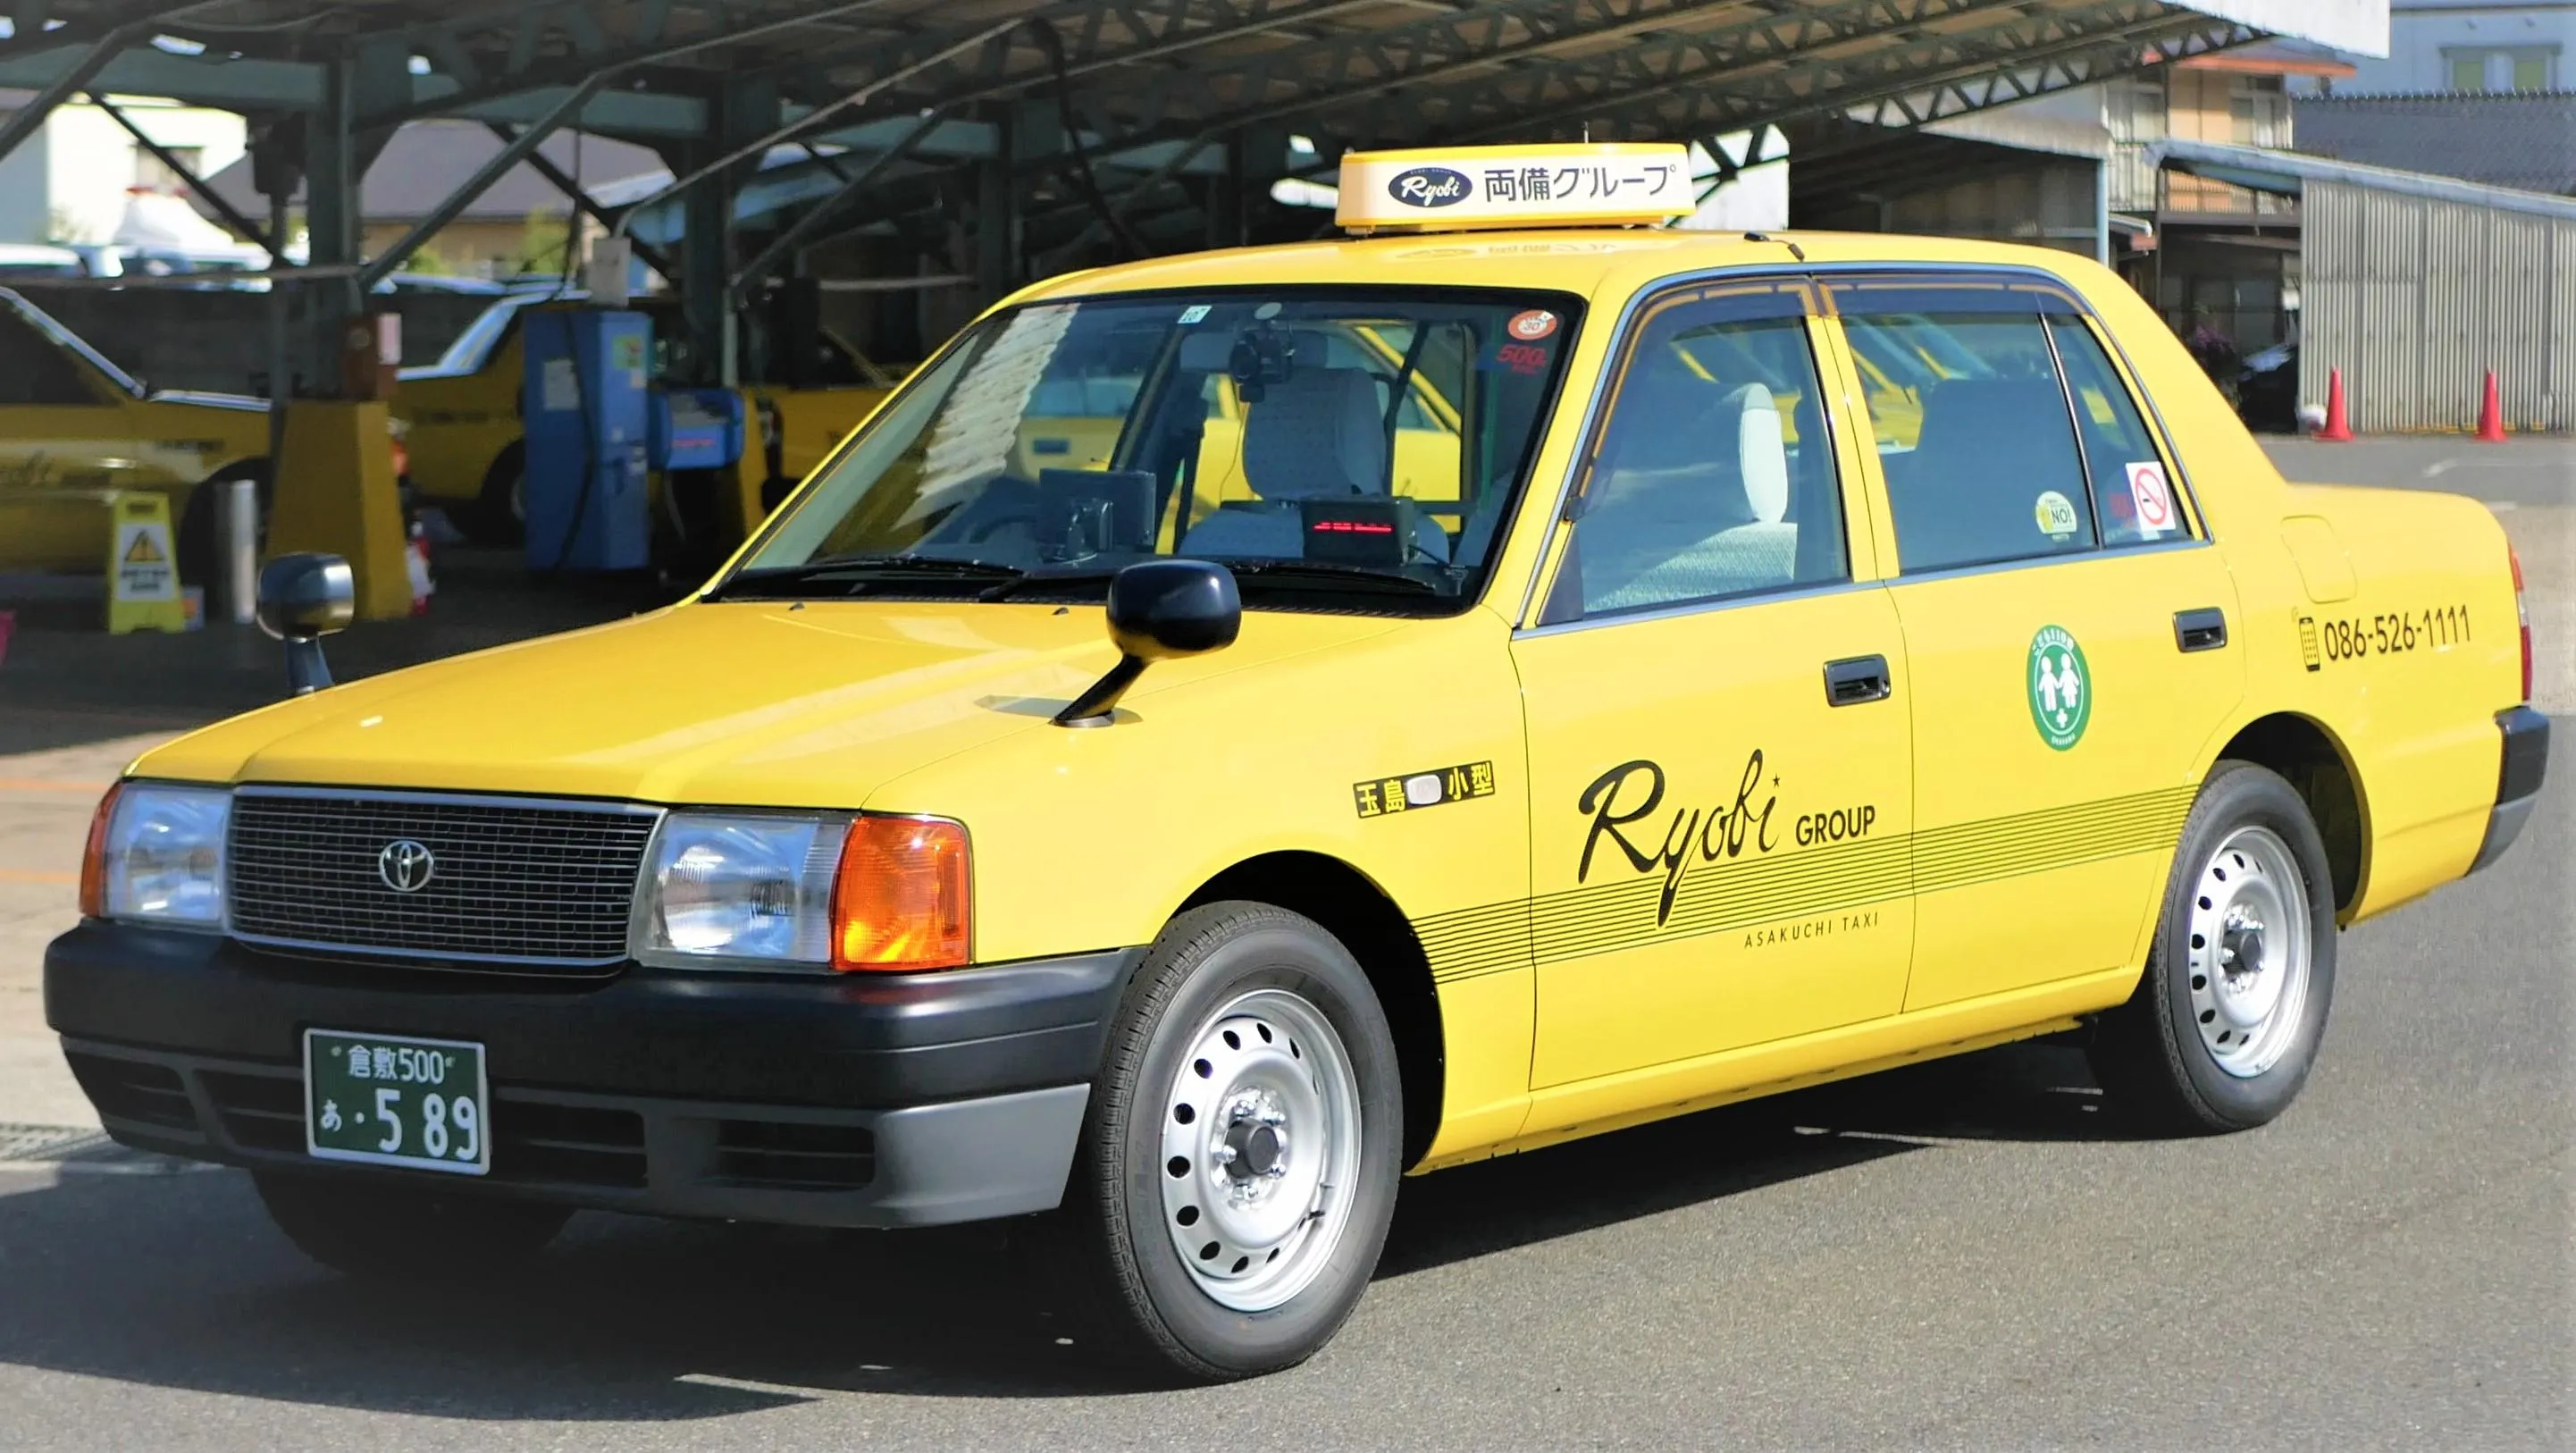 退職金制度有のタクシードライバー求人と転職に入社祝い金 タクq